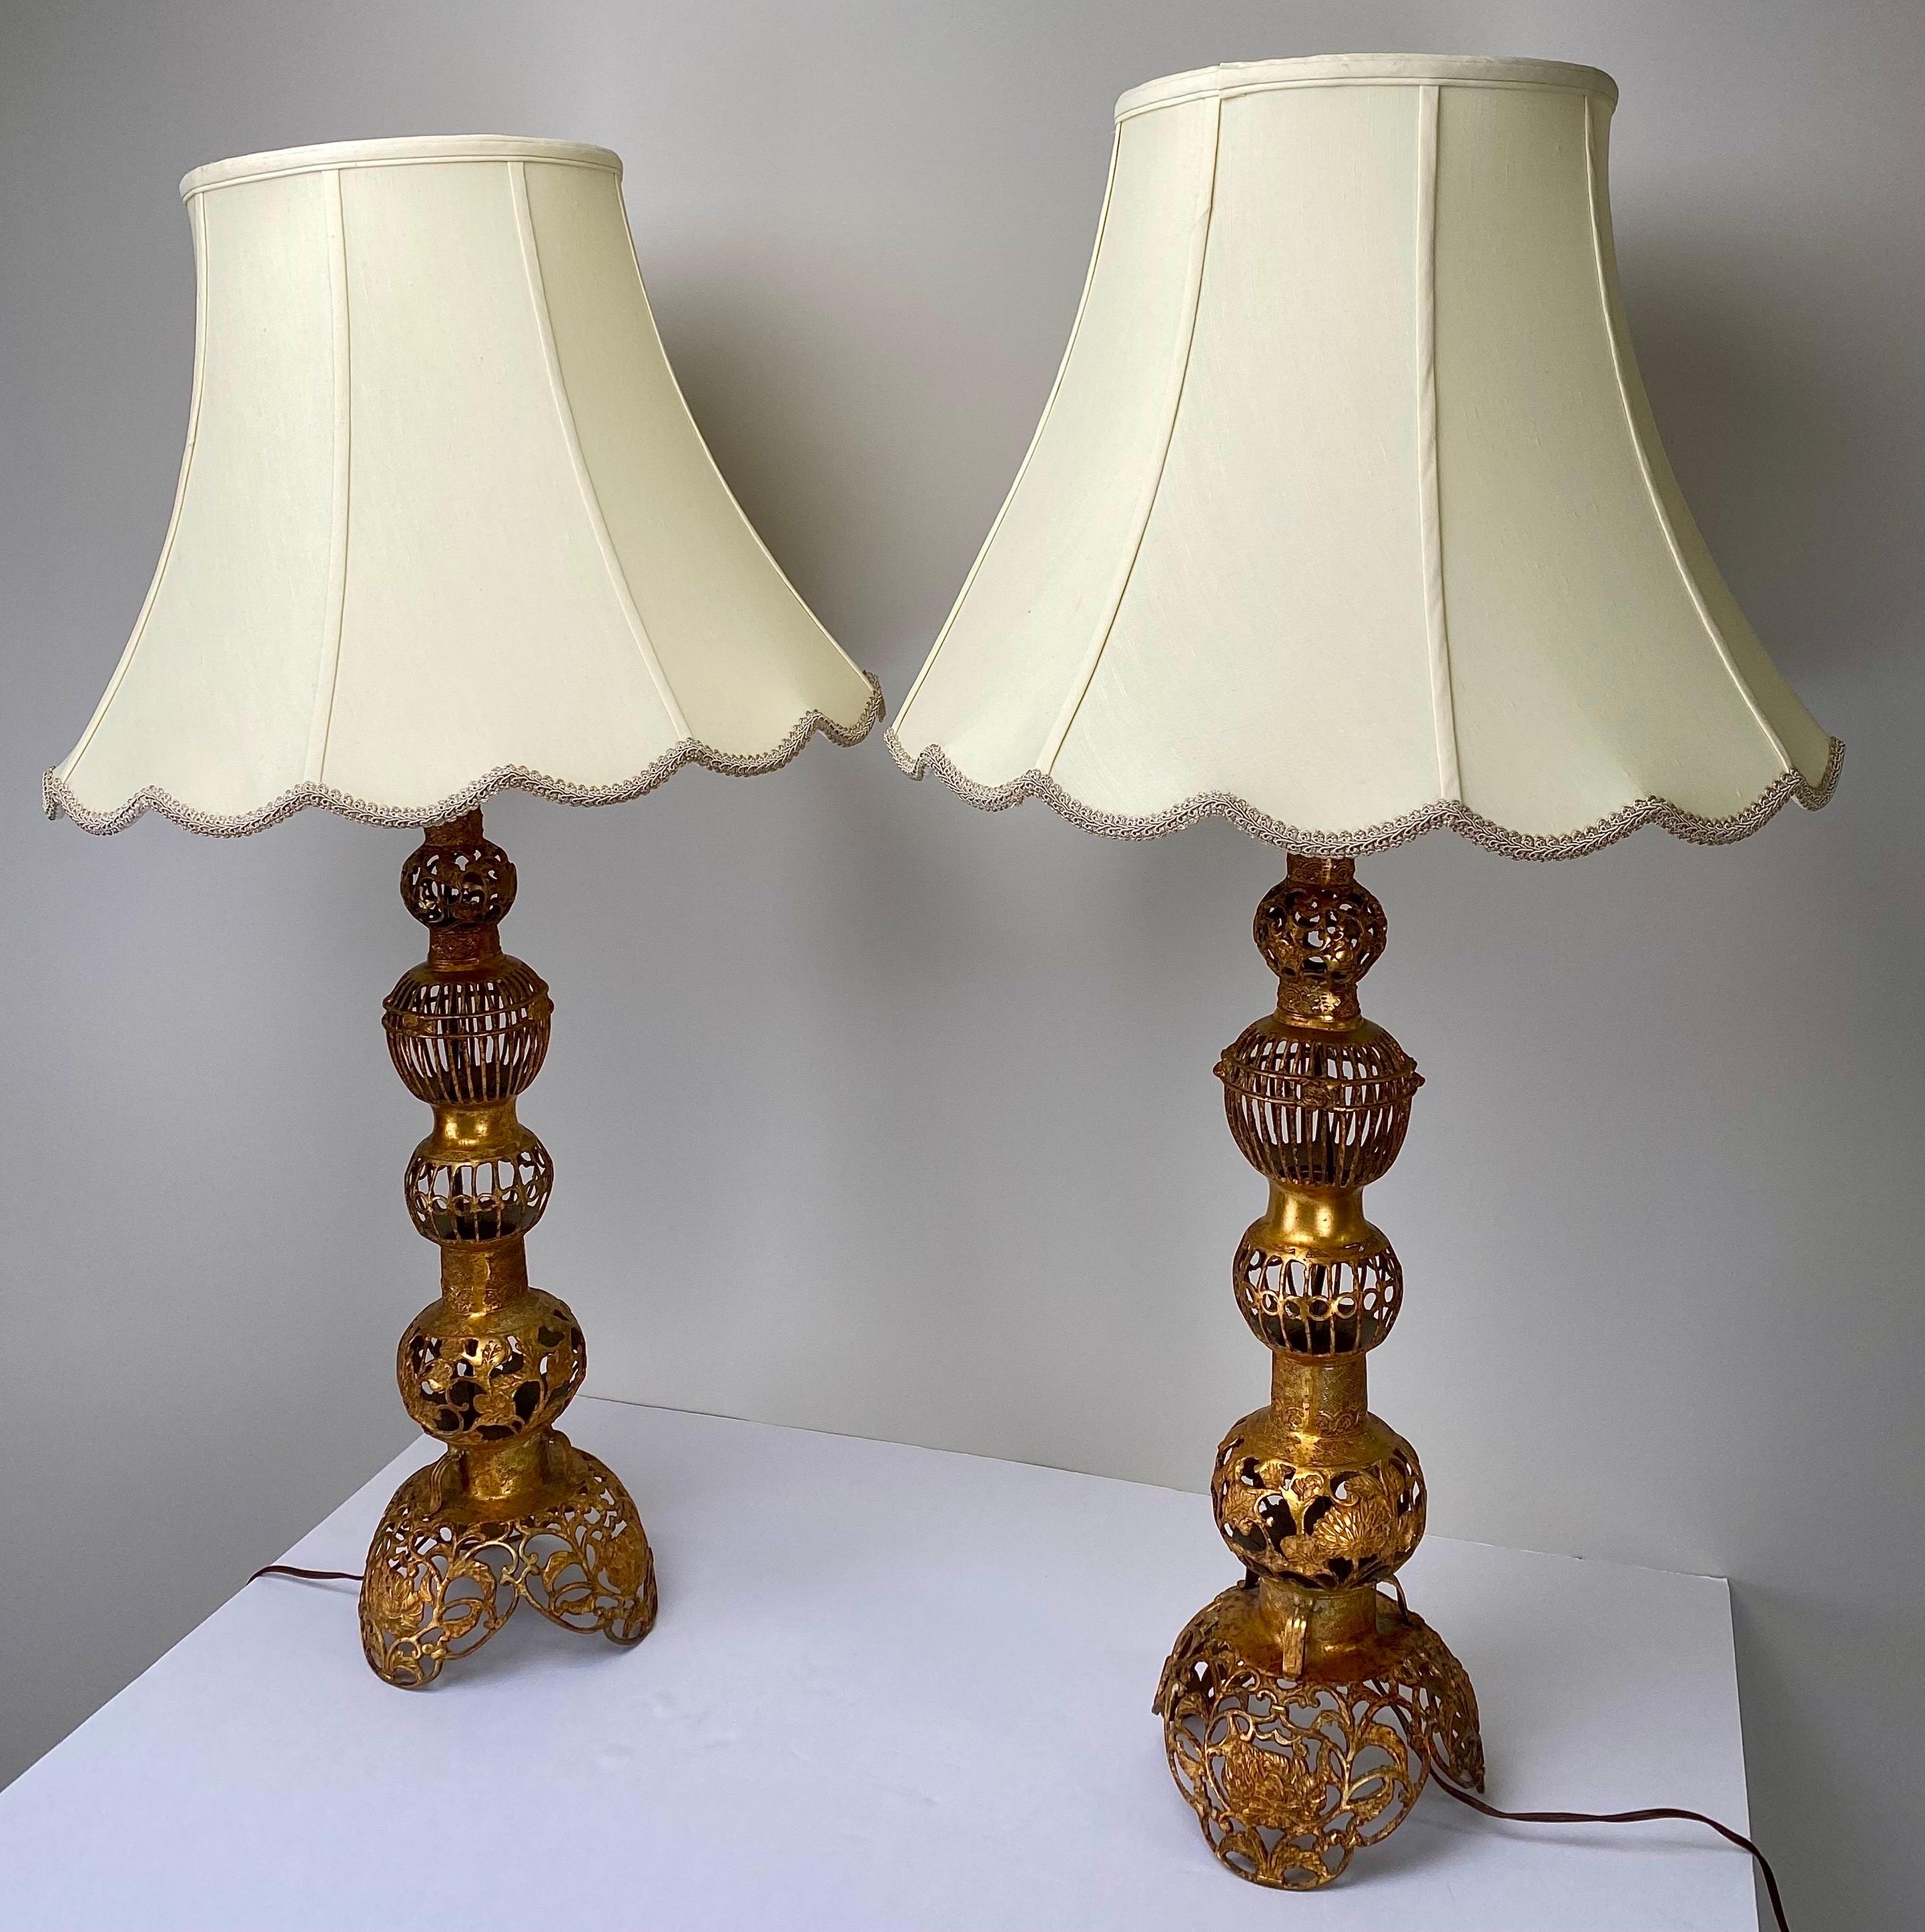 Paire de lampes de table de style chinois Hollywood Regency, d'une opulence et d'une grâce remarquables. Fabriquées avec un art méticuleux, ces lampes à étages se présentent comme des pièces majestueuses, façonnées en bronze et baignées dans une